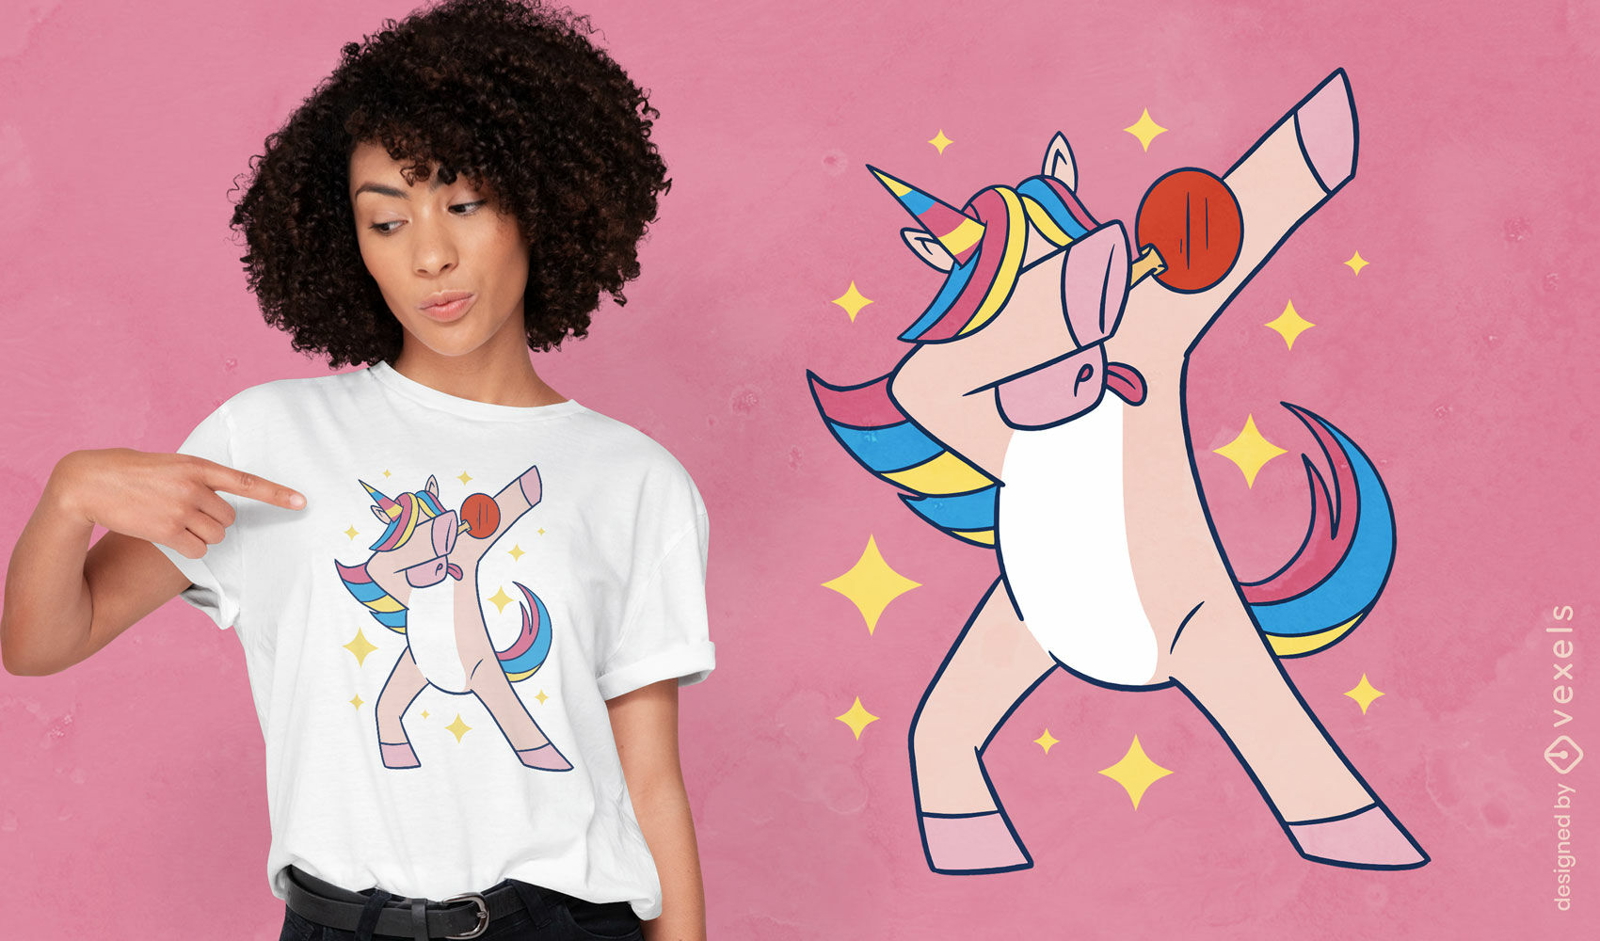 Dise?o de camiseta de unicornio y paleta de ping pong.